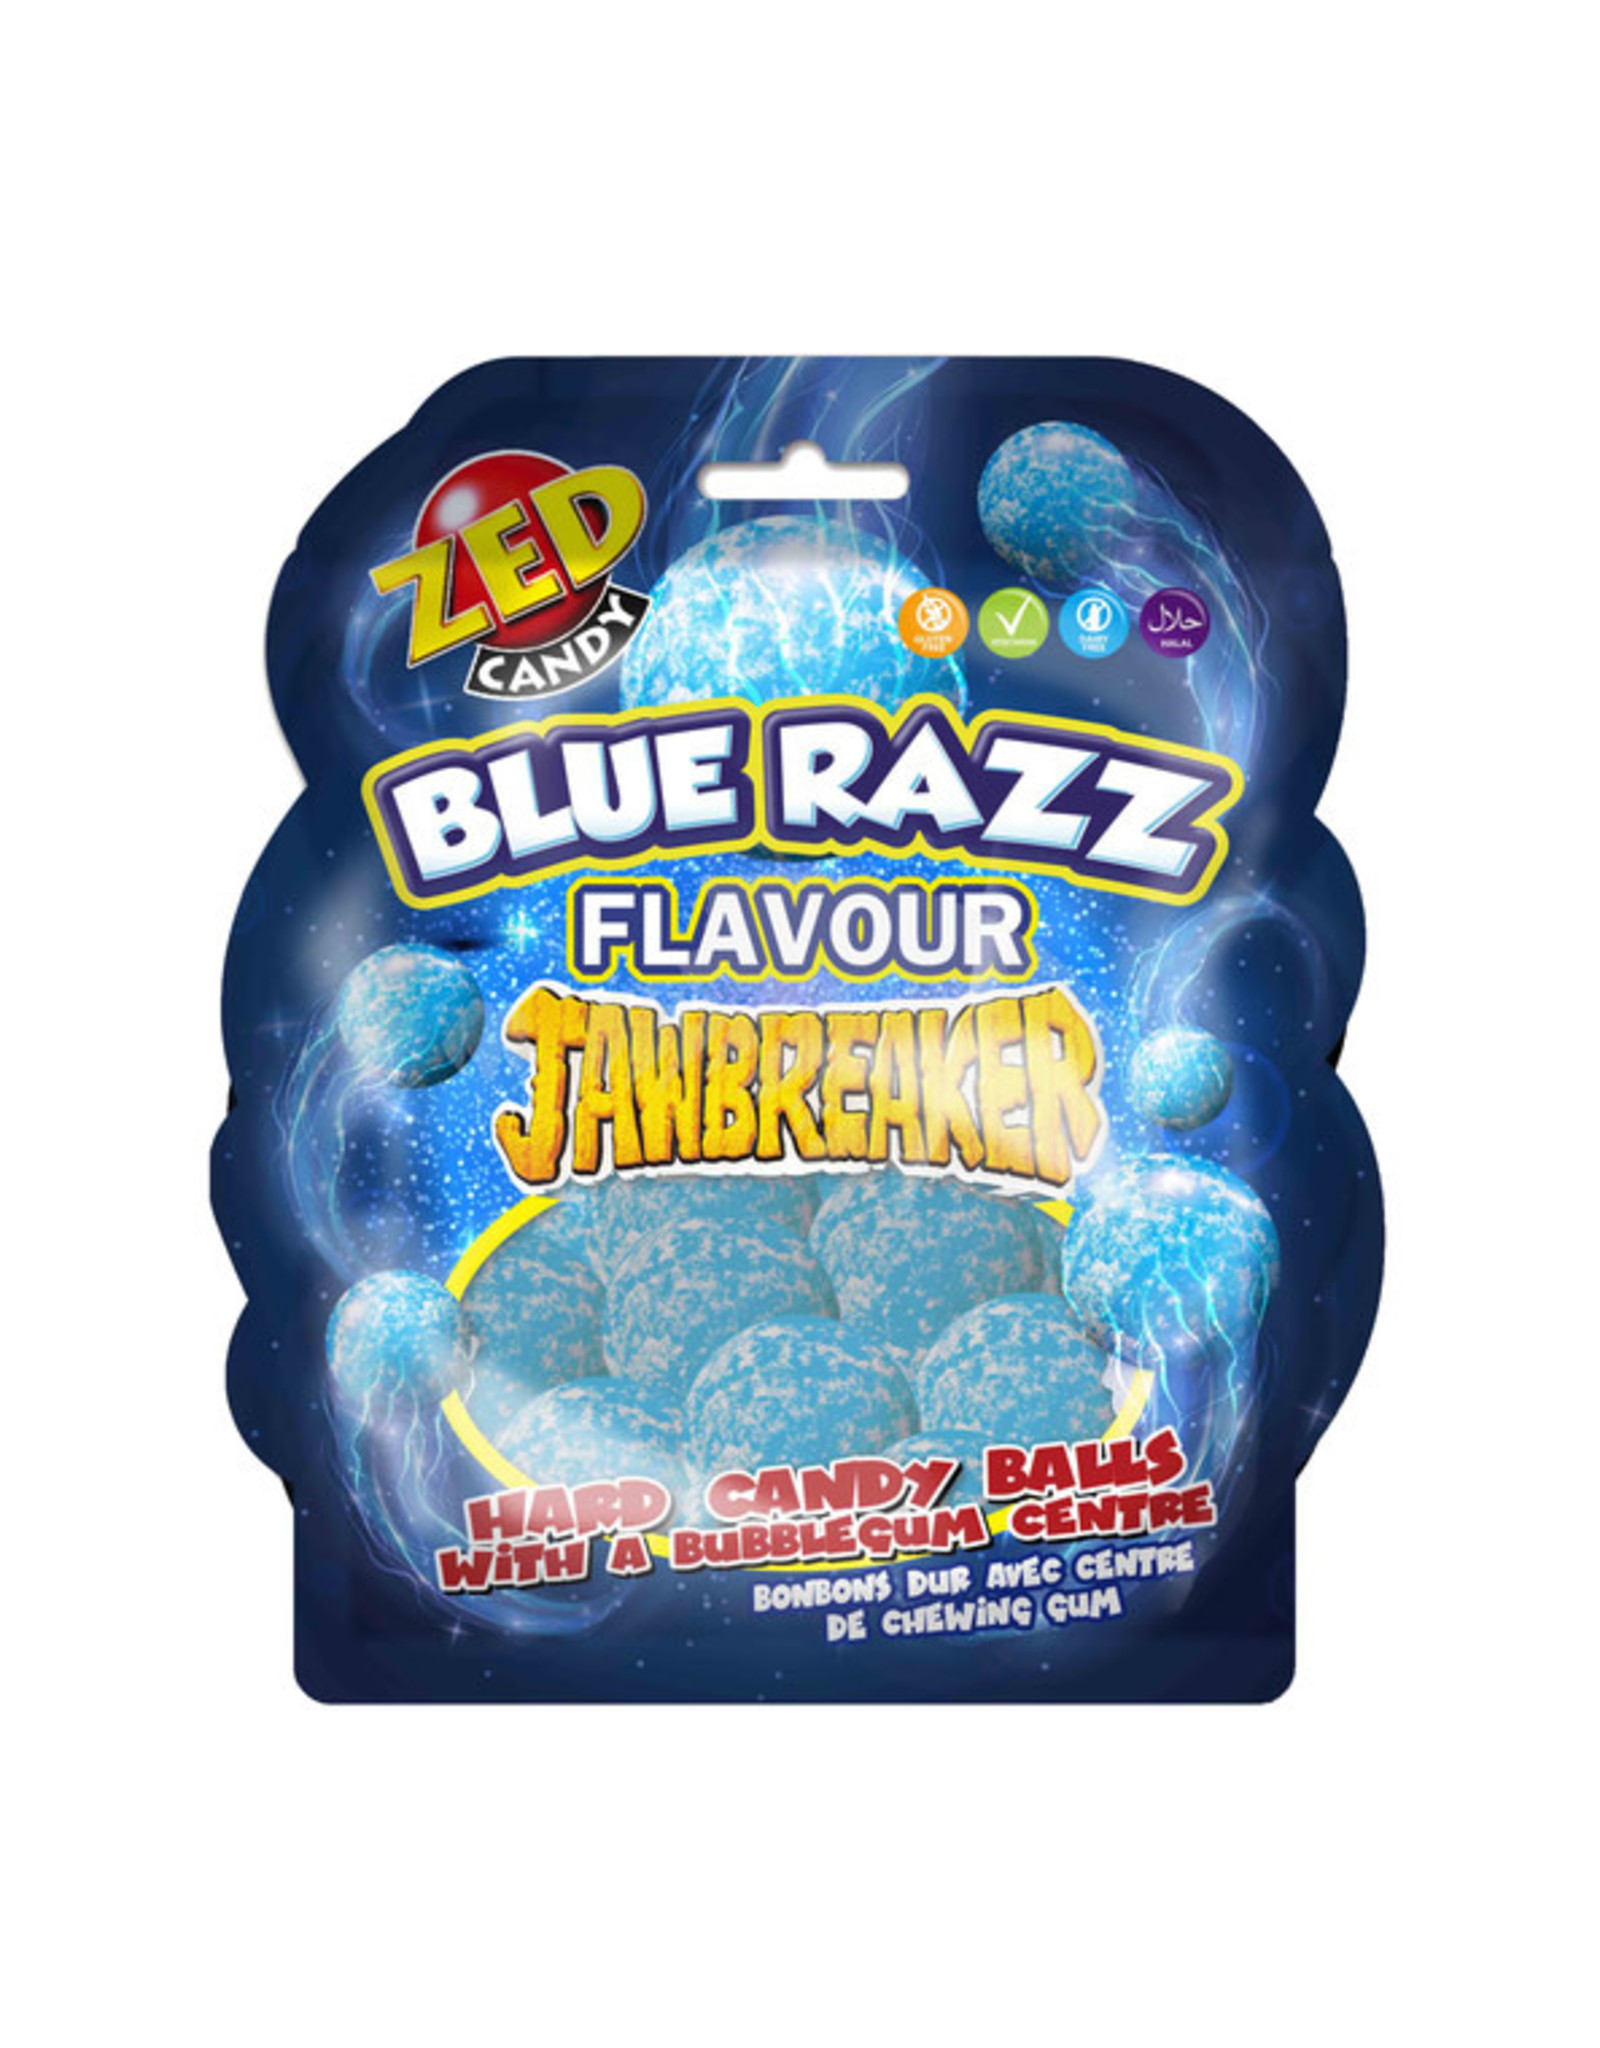 Zed - Blue Razz Jawbreaker - 132g